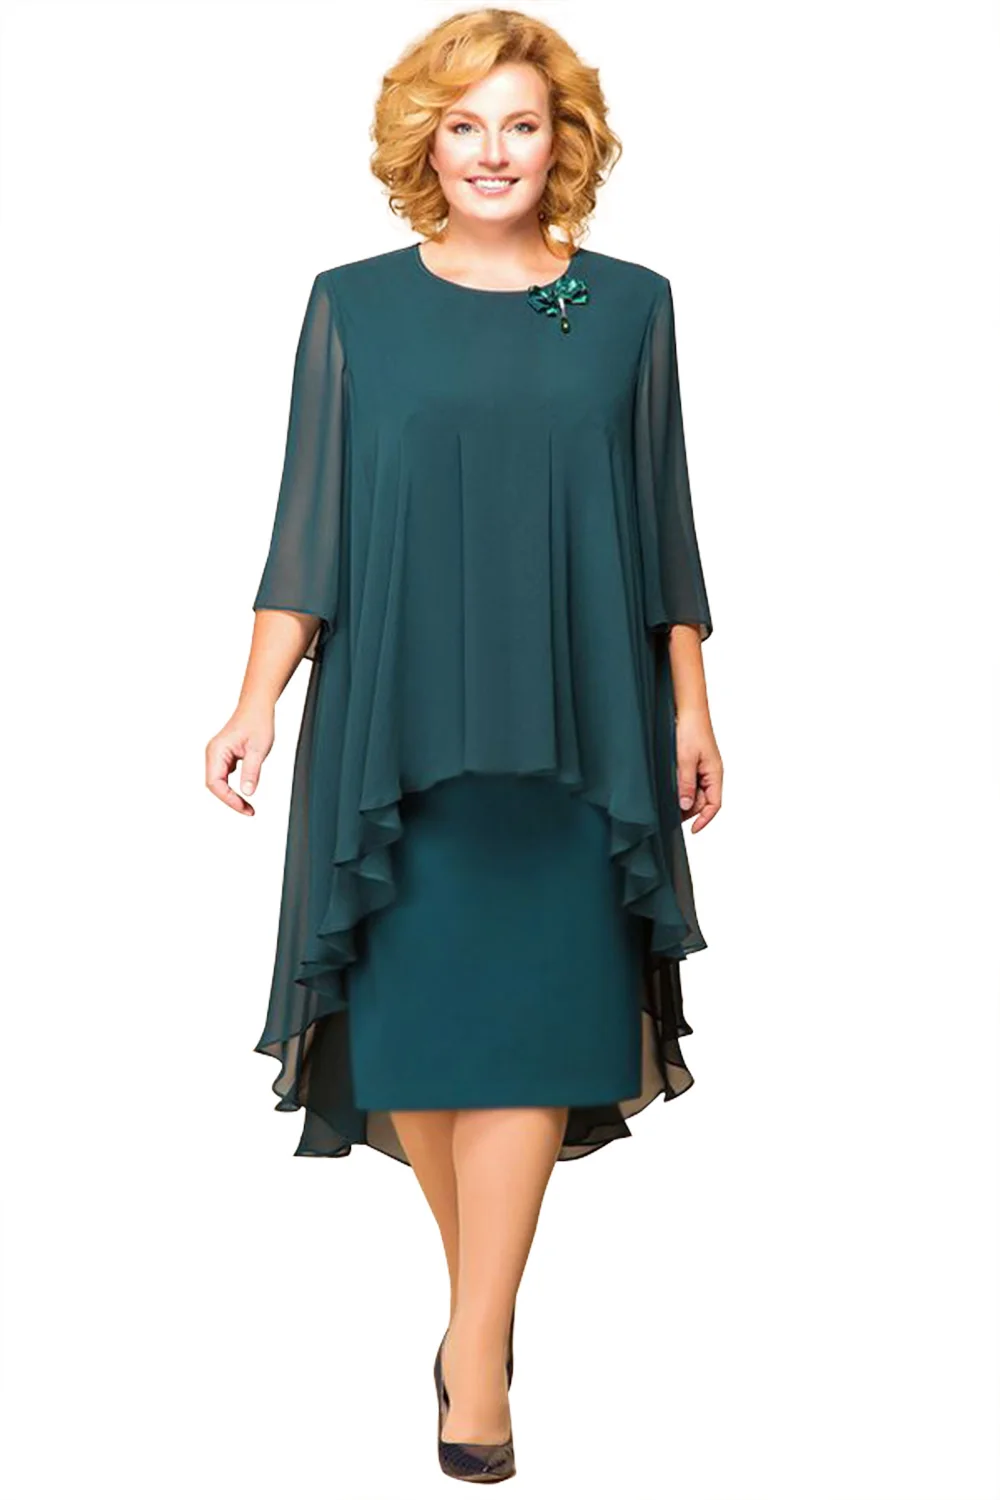 Xunbei вечернее платье размера плюс короткое Зеленое Шифоновое официальное платье элегантное платье с коротким рукавом - Цвет: Deep Green